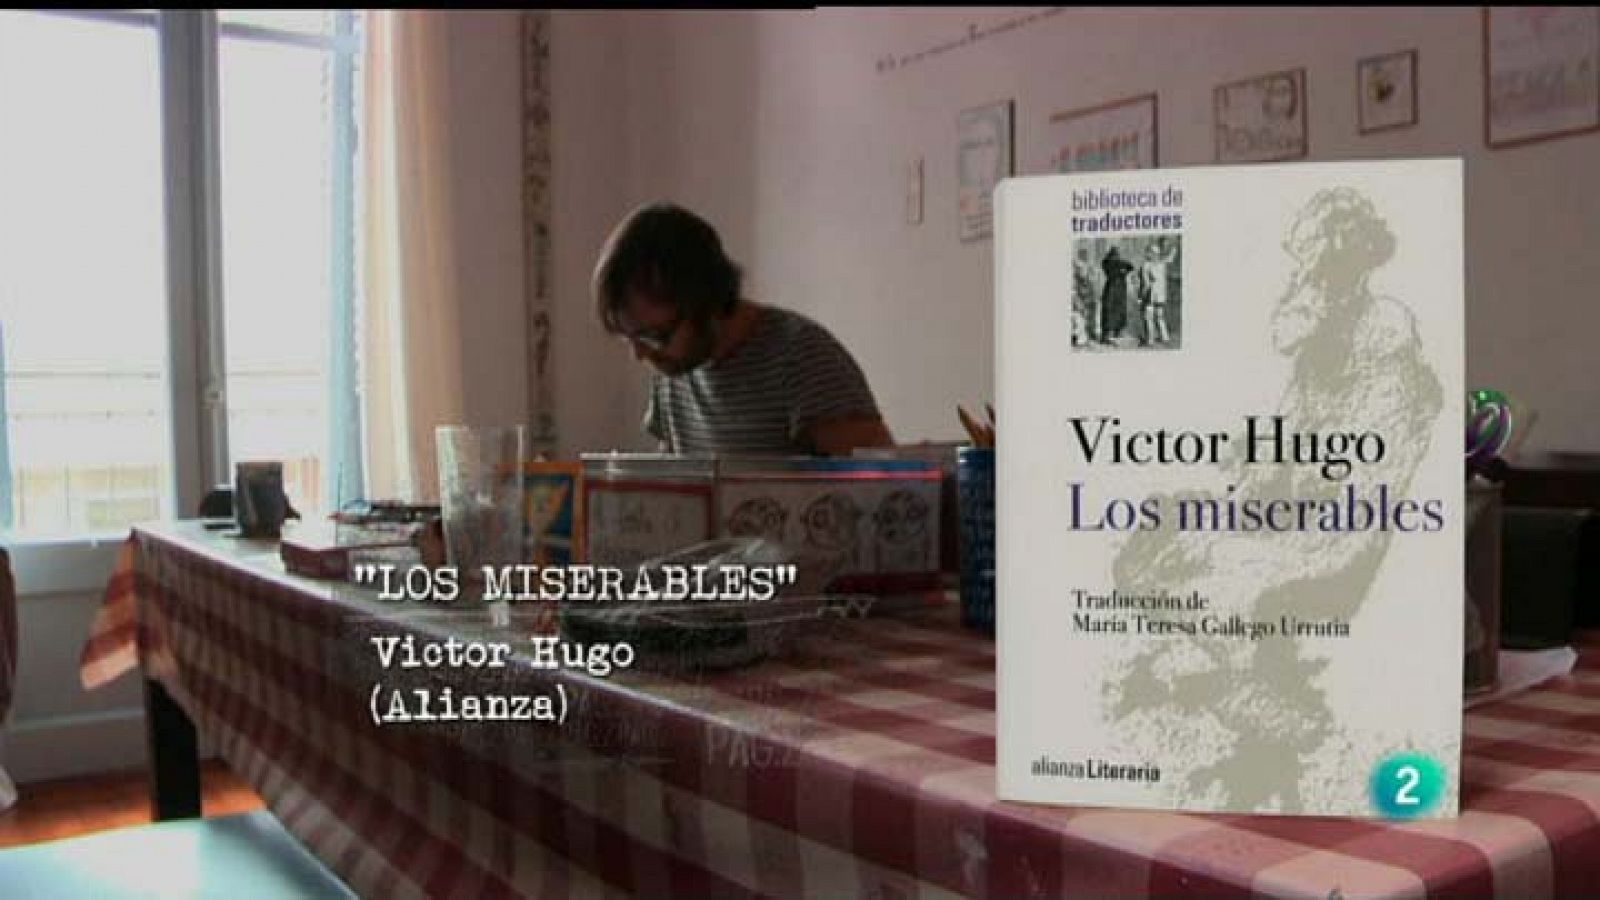 Página 2 - Clásicos - "Los miserables", de Victor Hugo